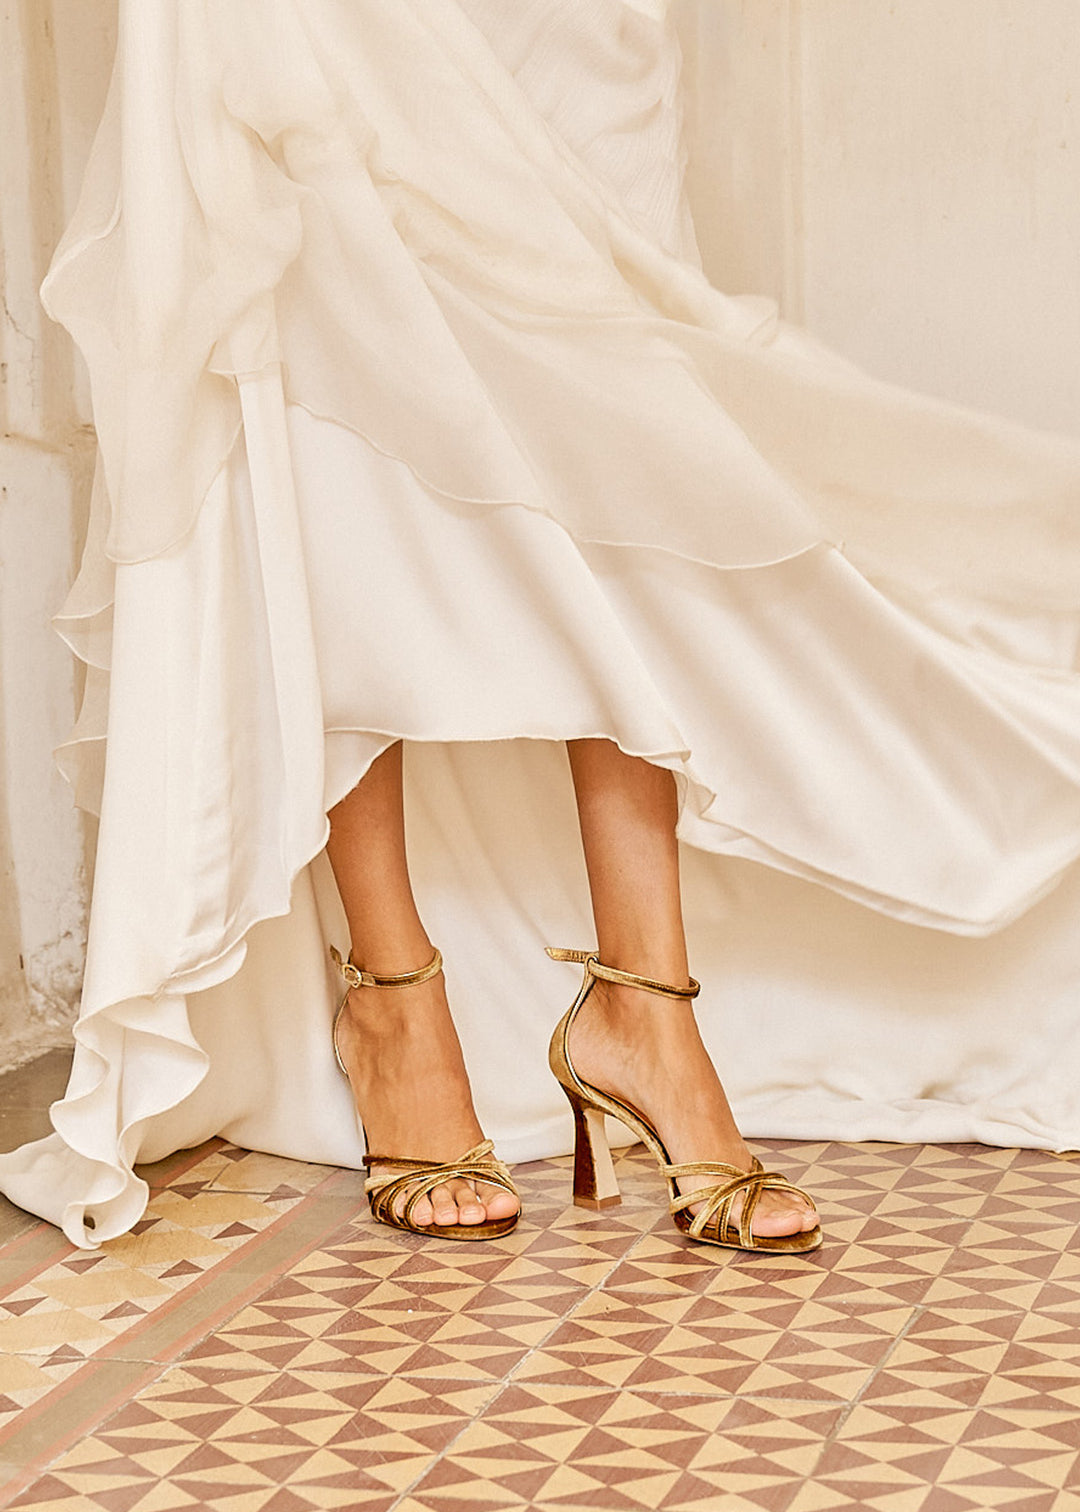 Sandalias doradas de tiras cómodas para novia, invitada o fiesta